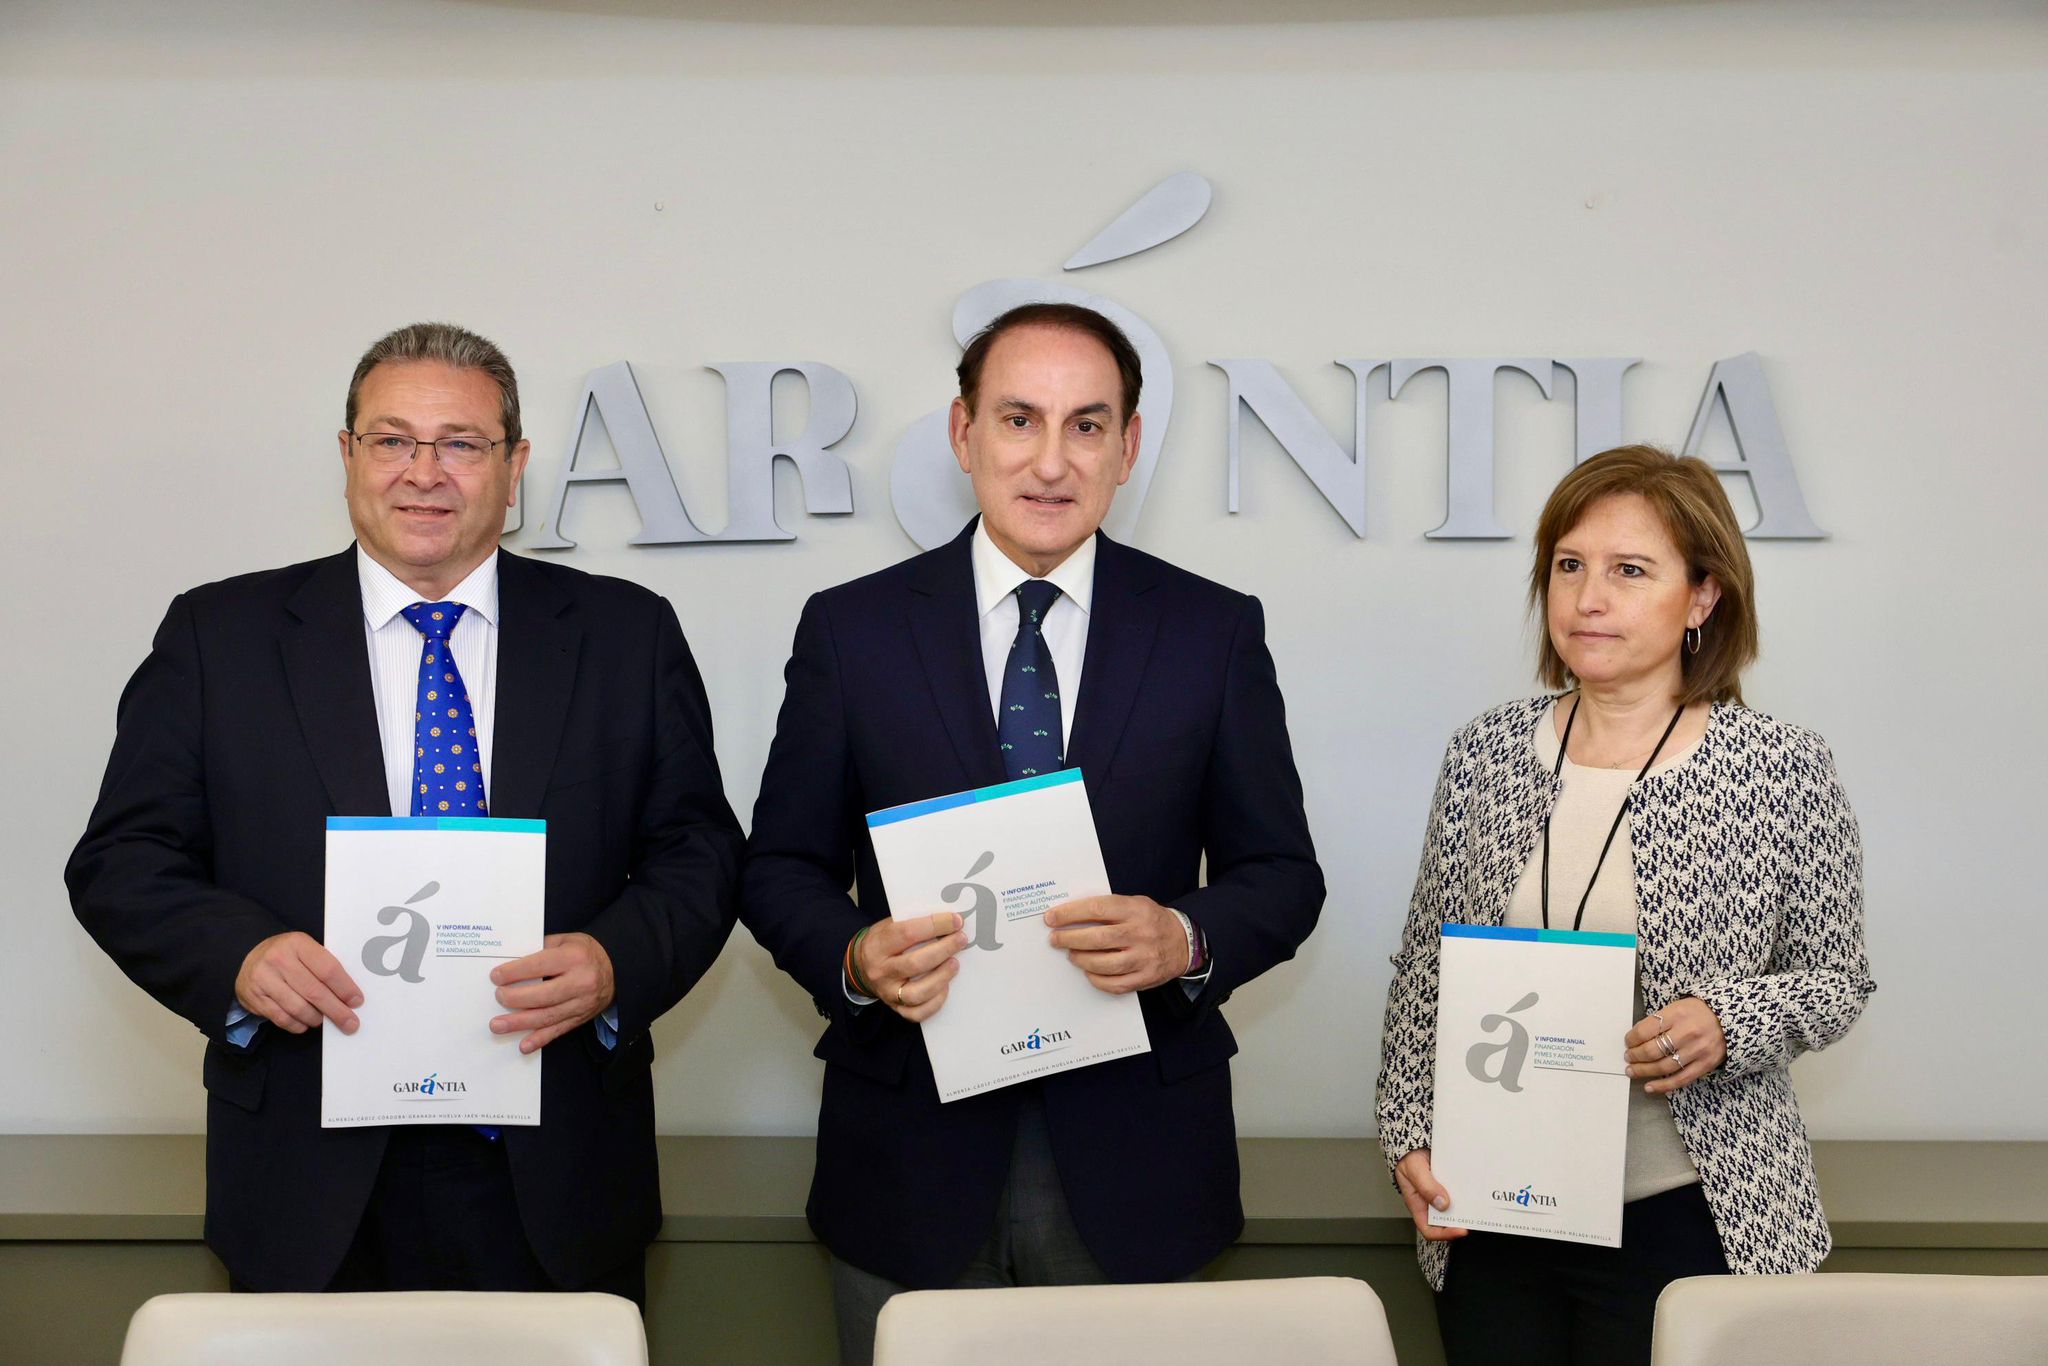 Garántia presenta el V Informe “Financiación de pymes y autónomos en Andalucía”